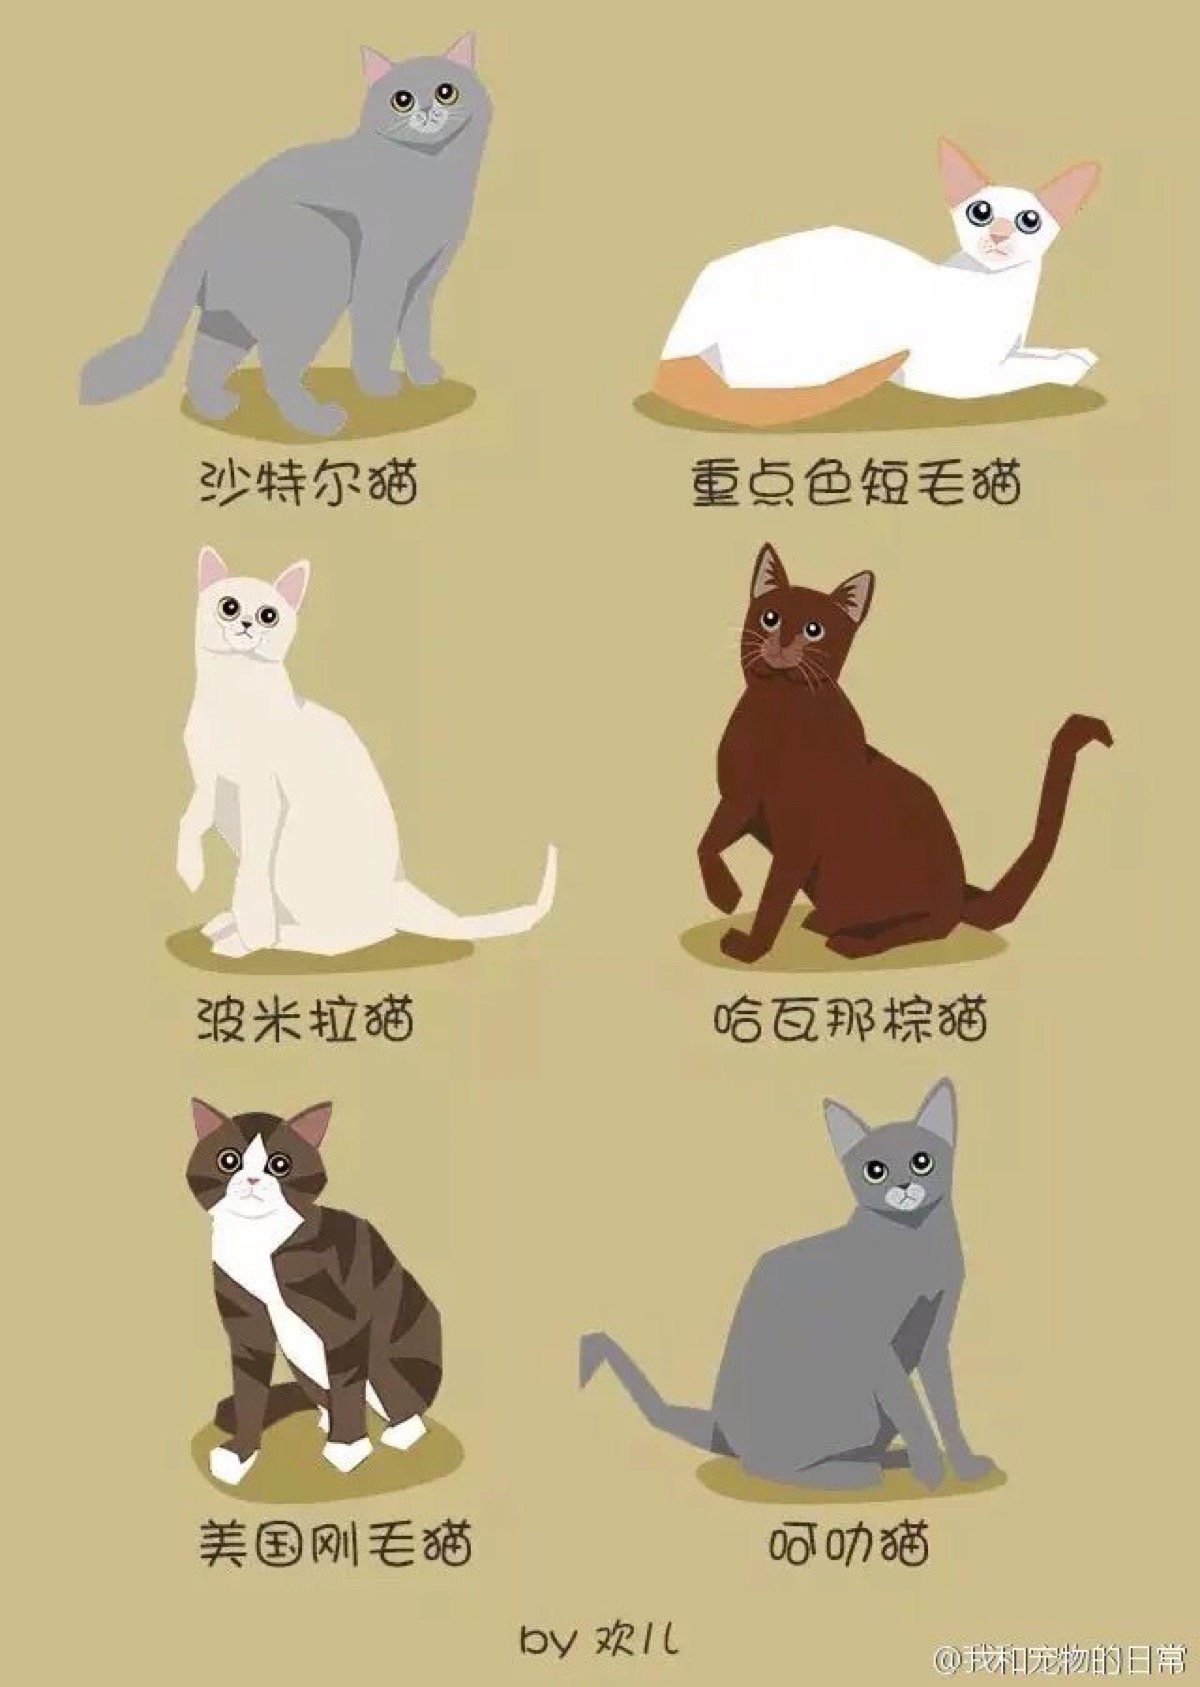 如何分辨猫的品种